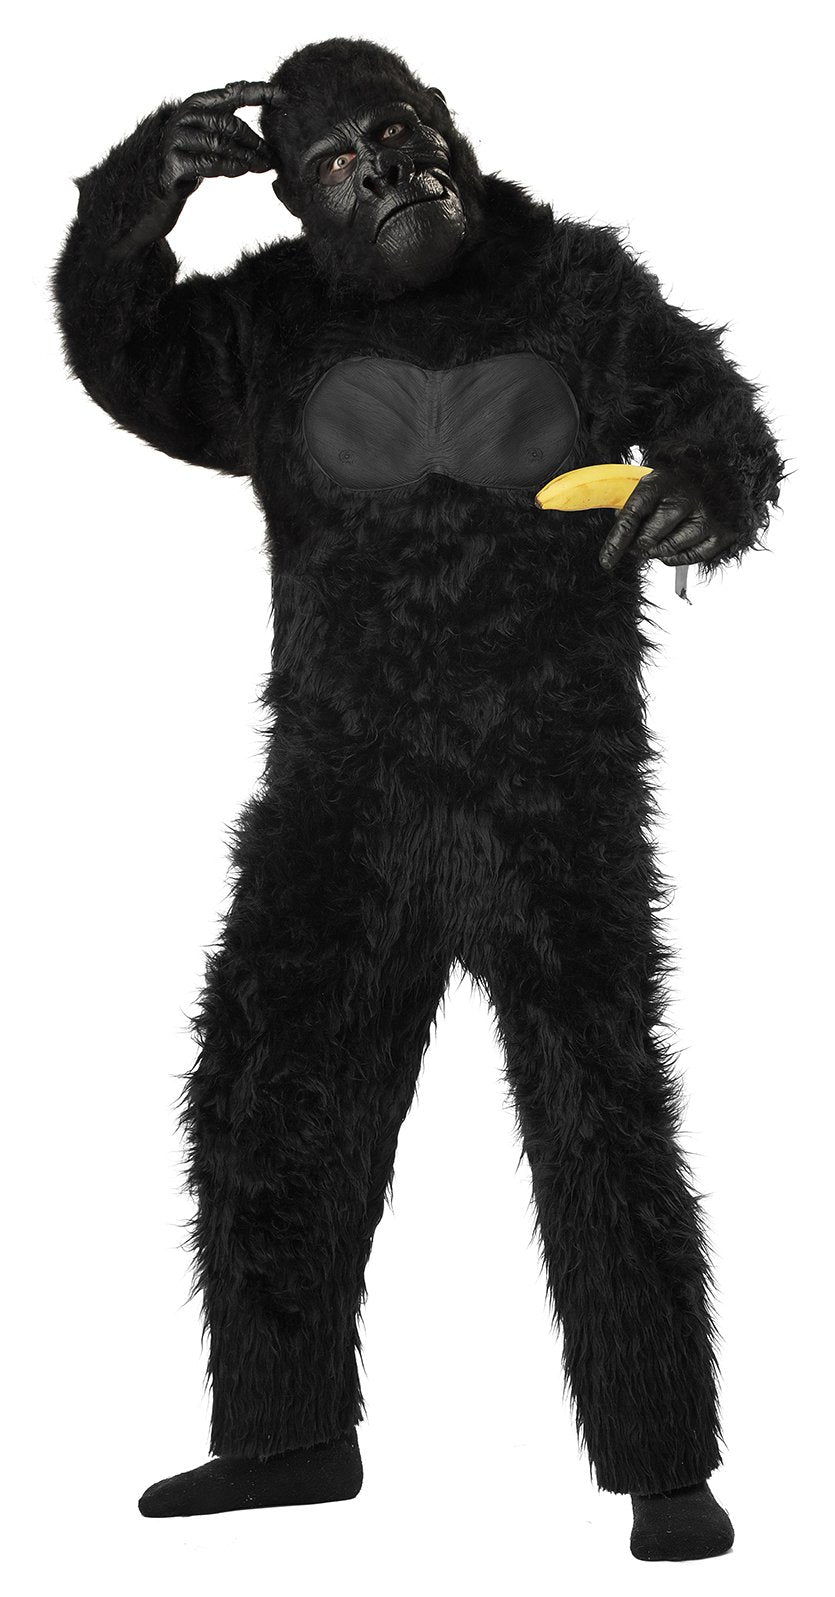 Furry Black Gorilla Suit